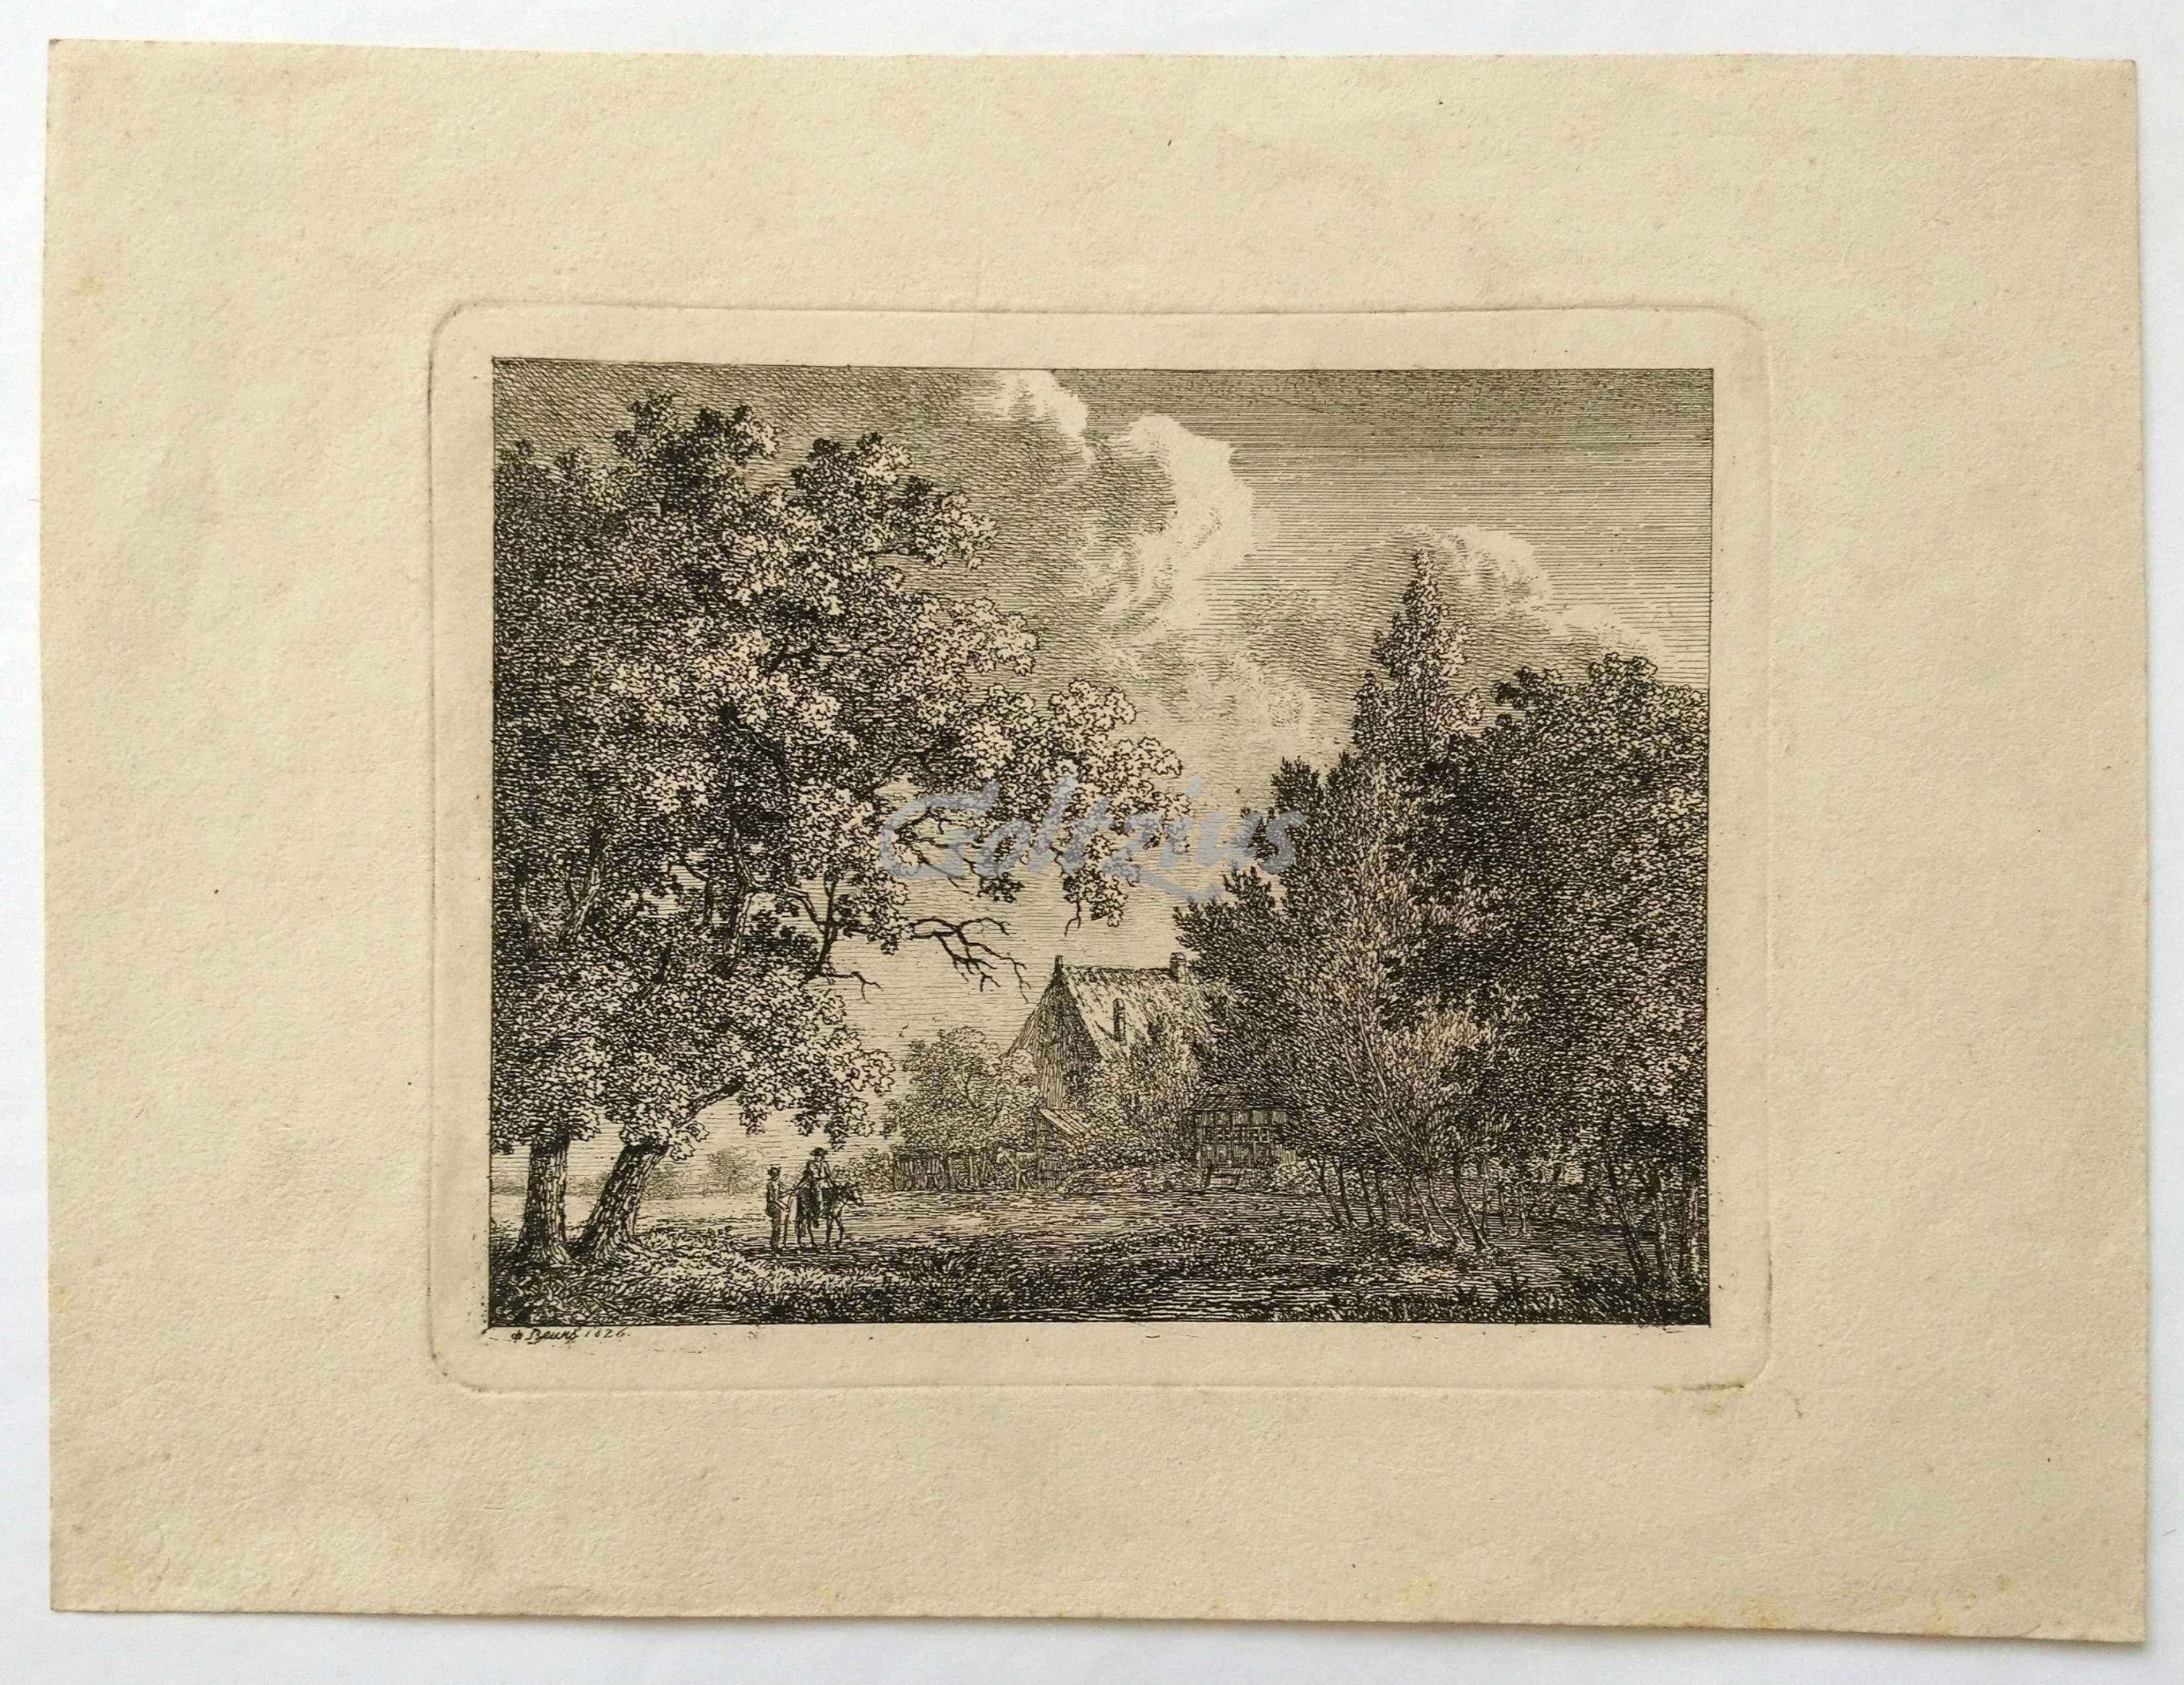 BEURS STIERMANS, ANDRÉ PAUL DE, Landscape with two talking figures and a farmhouse